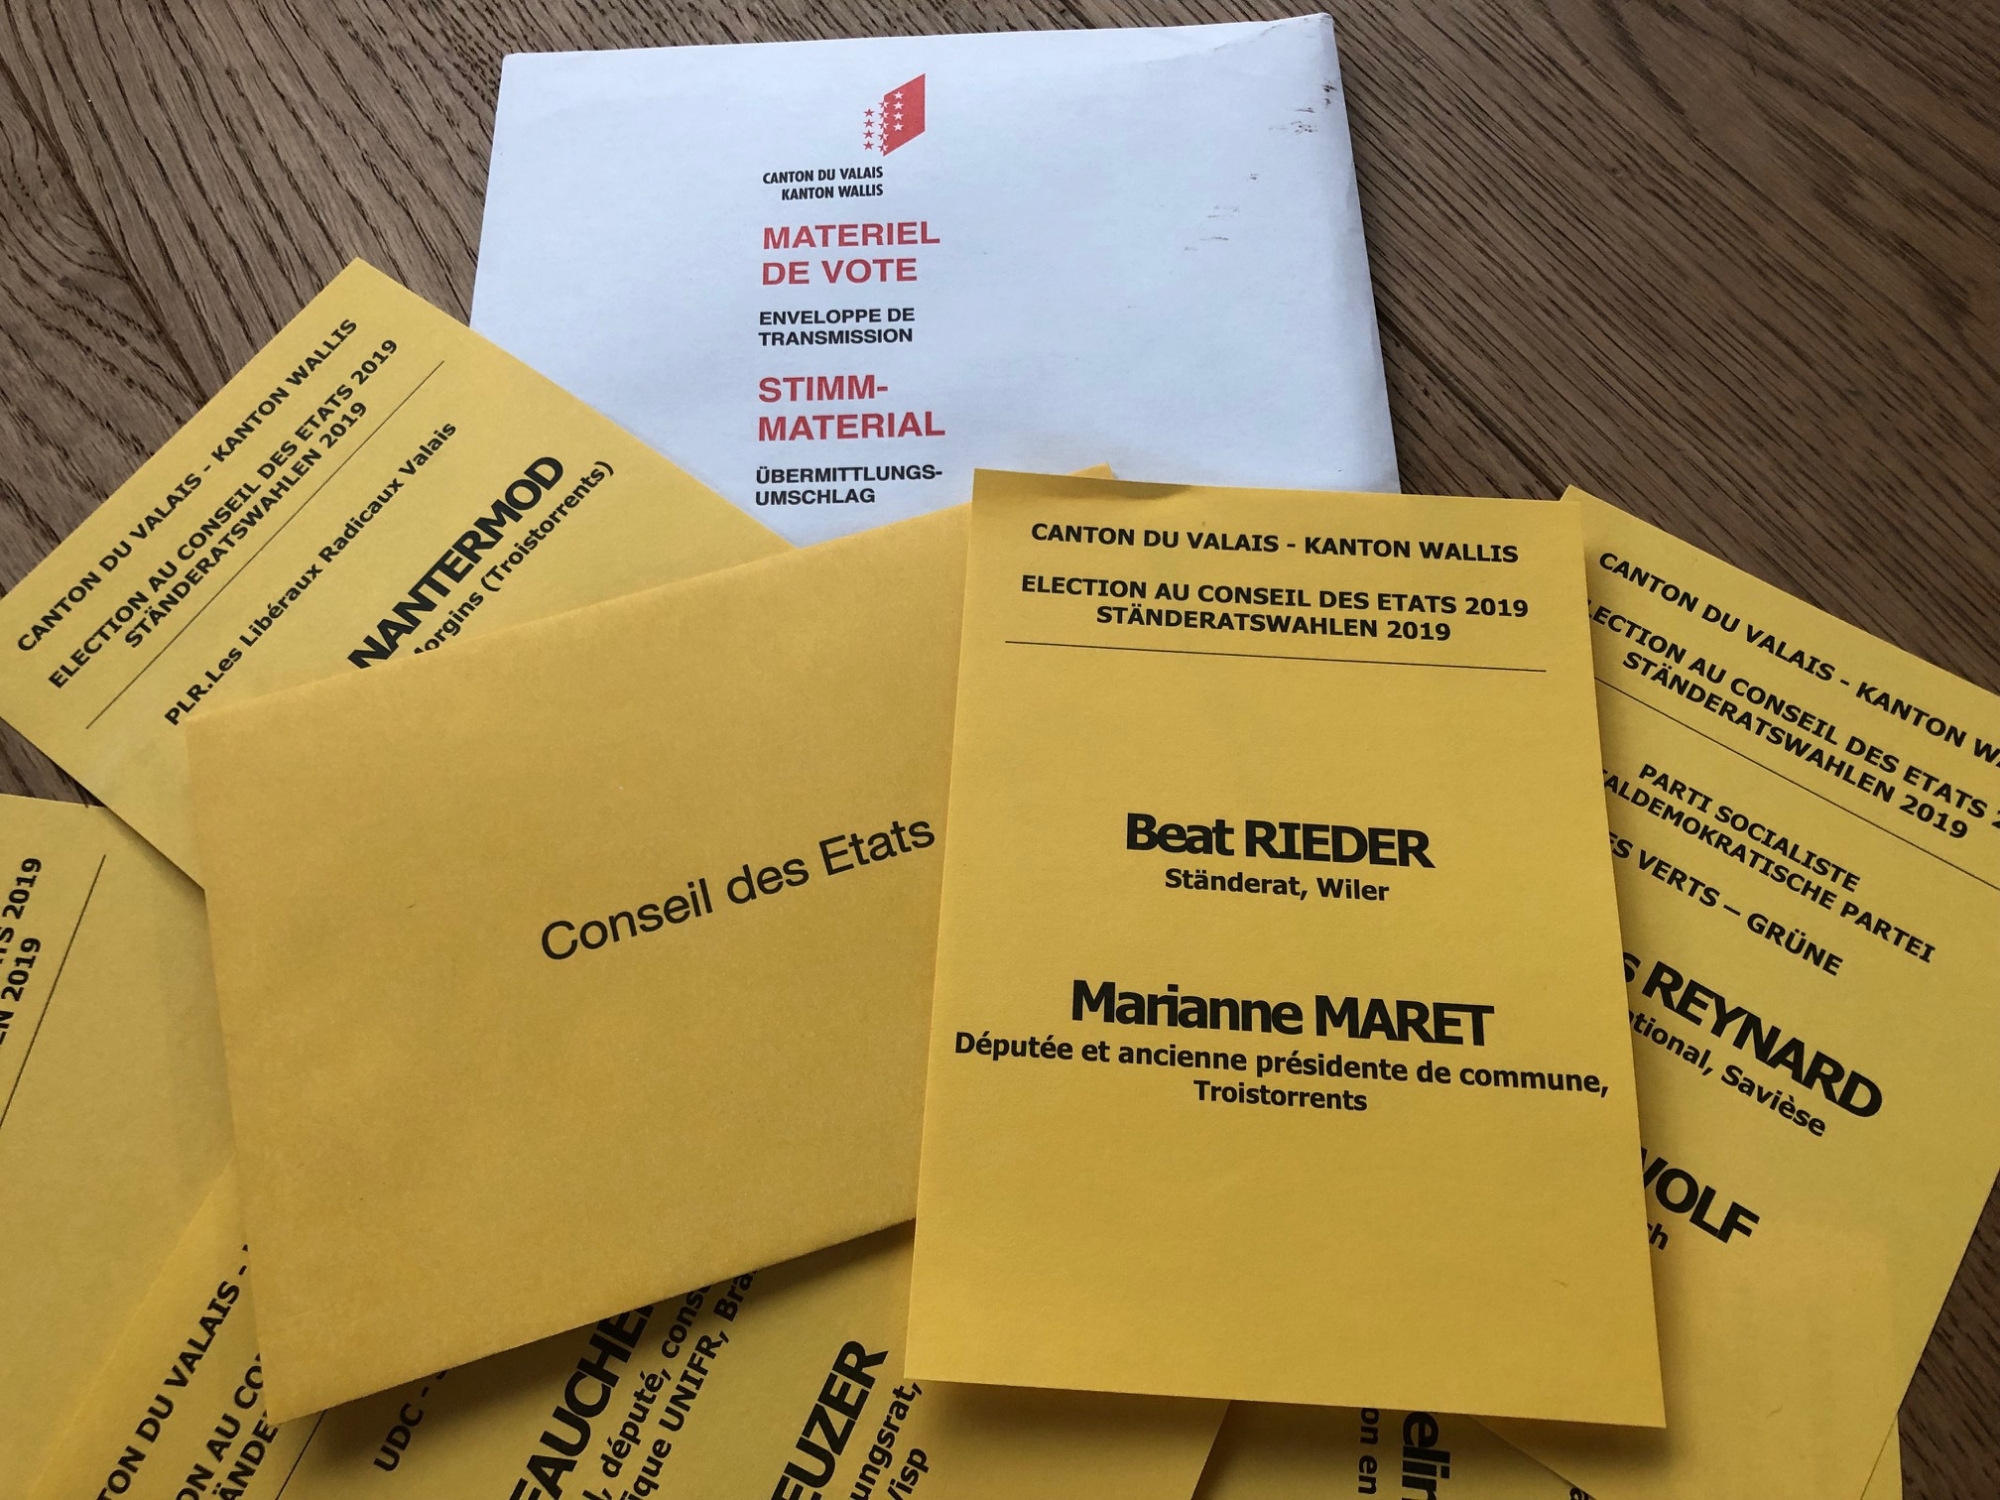 Aucun nom de parti pour la liste Beat Rieder - Marianne Maret.